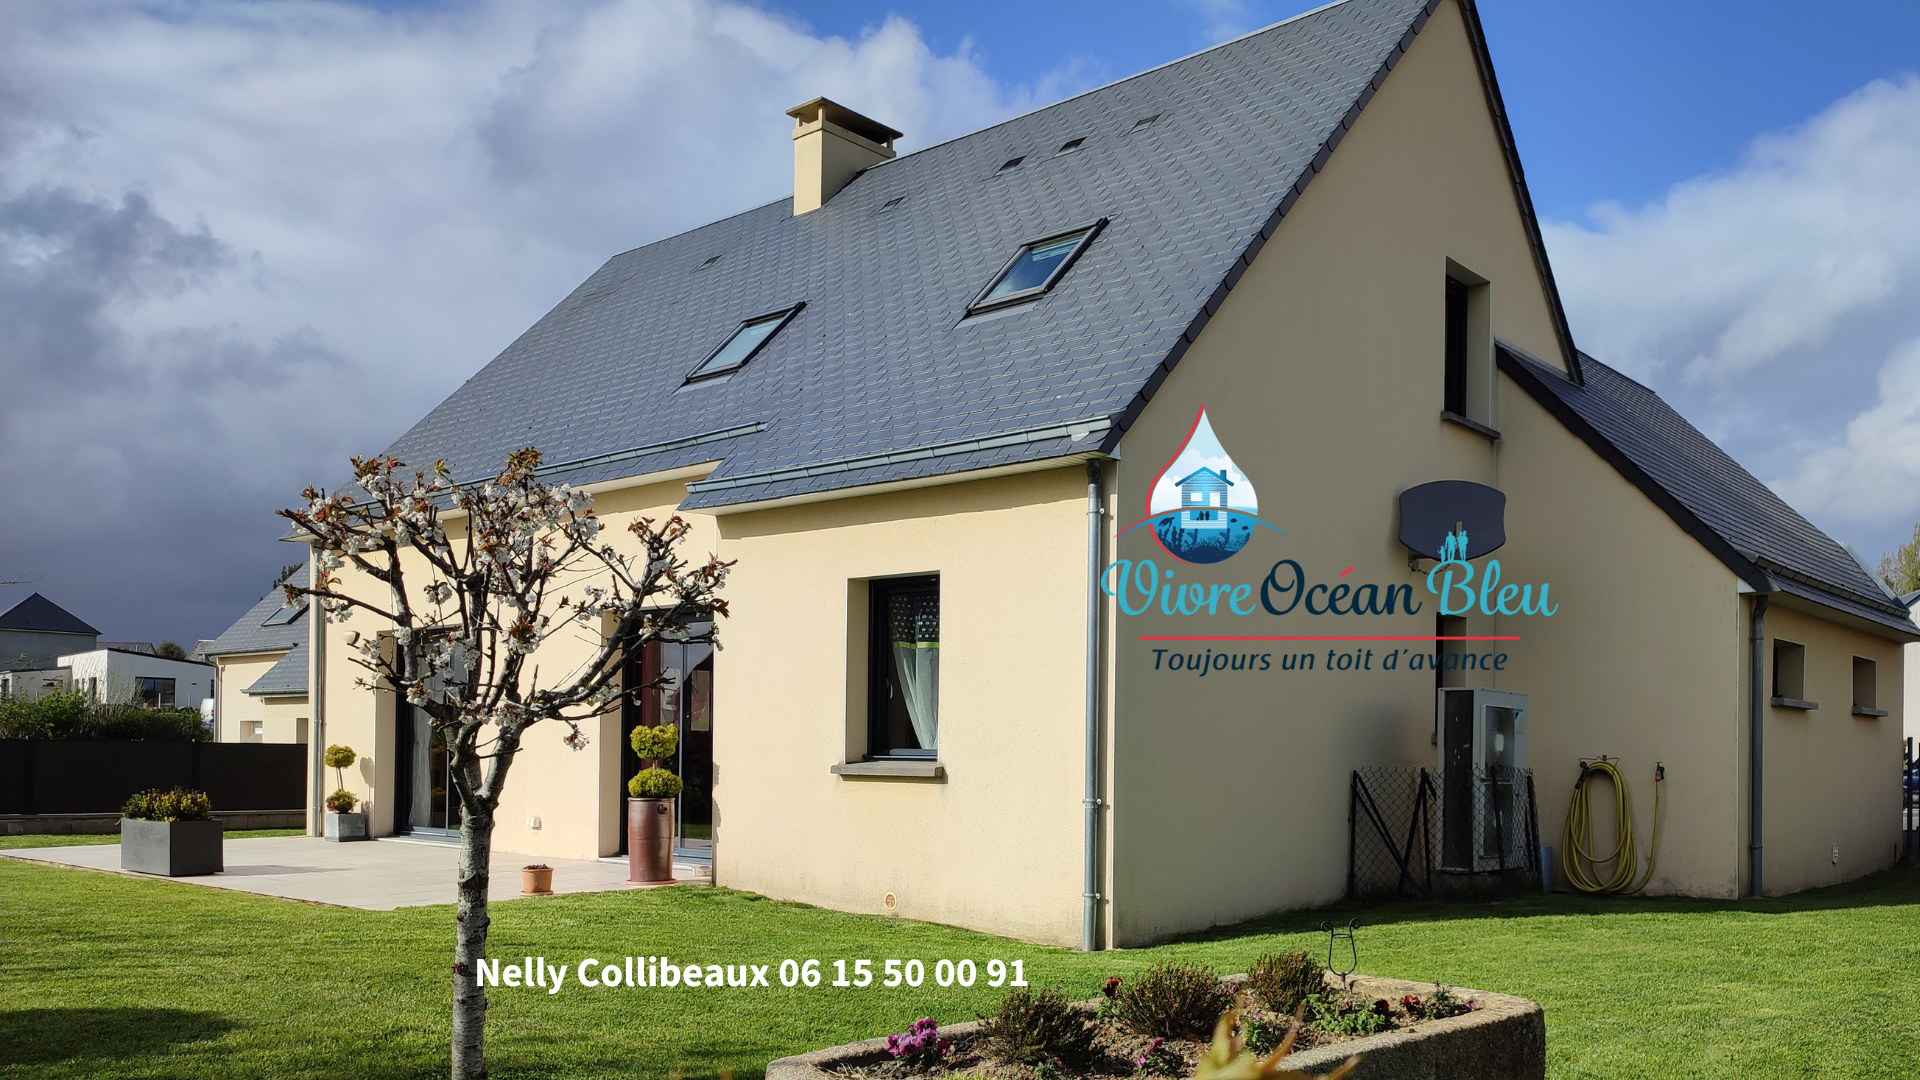 Vente Maison 117m² 6 Pièces à Guilberville (50160) - Vivre Océan Bleu